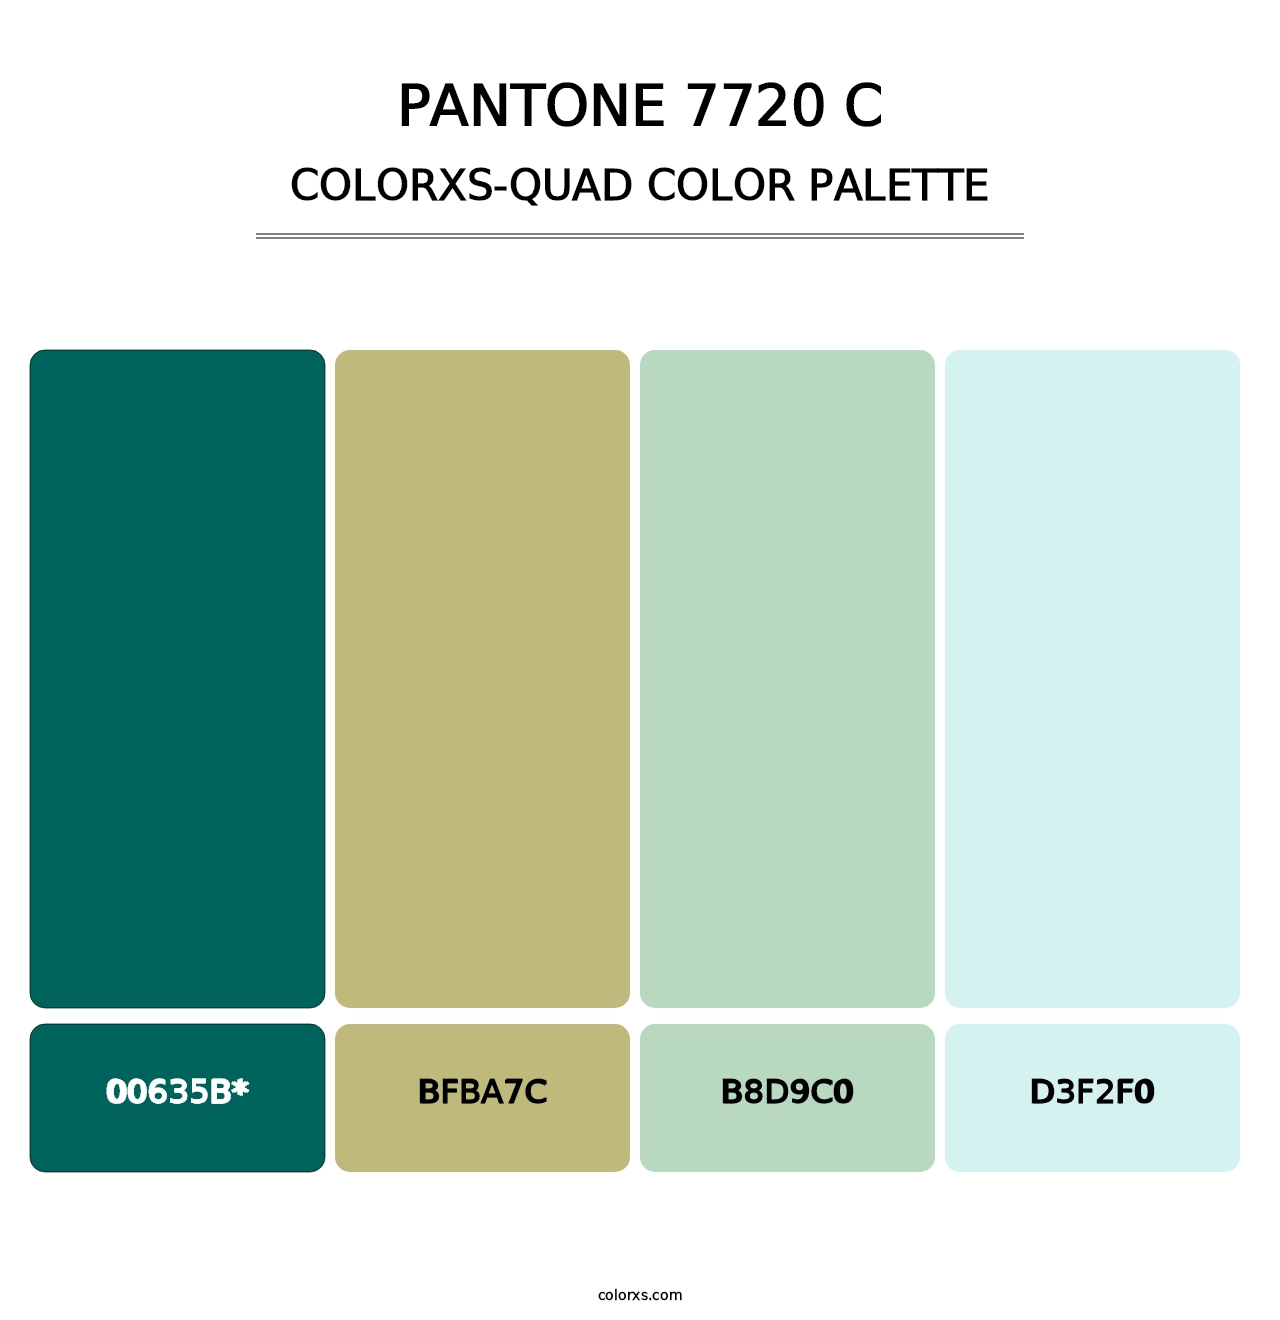 PANTONE 7720 C - Colorxs Quad Palette